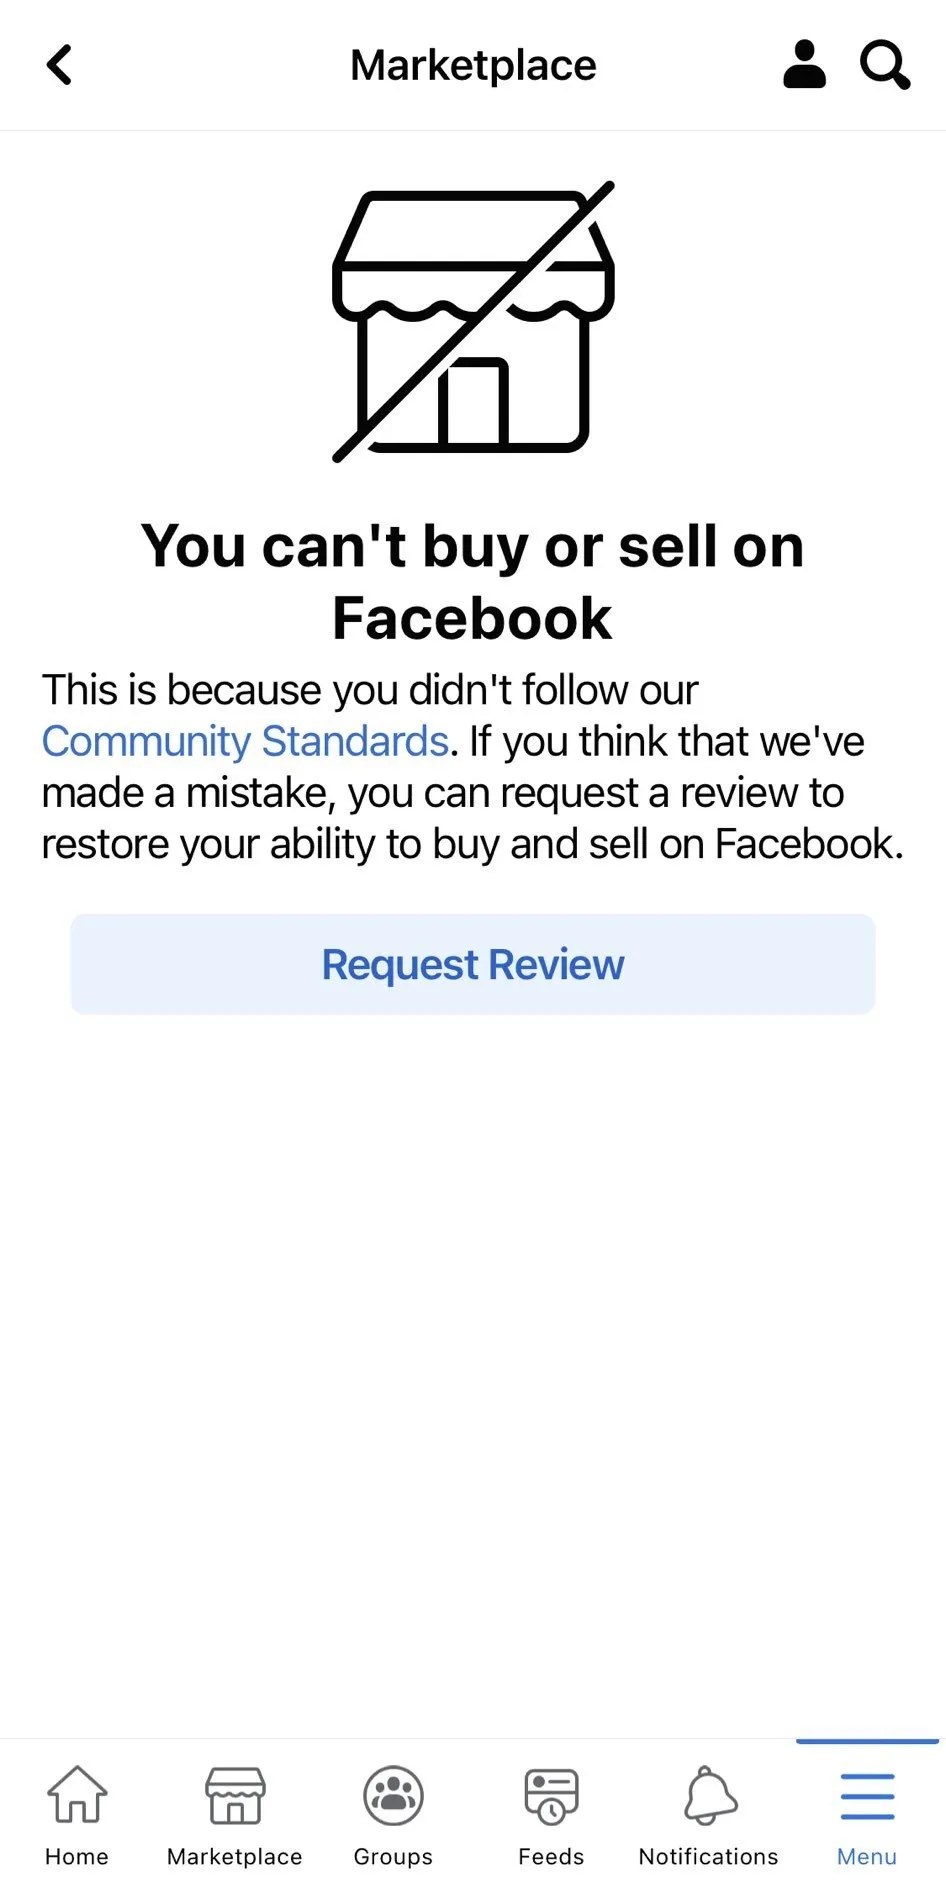 Je kunt niet kopen en verkopen op Facebook